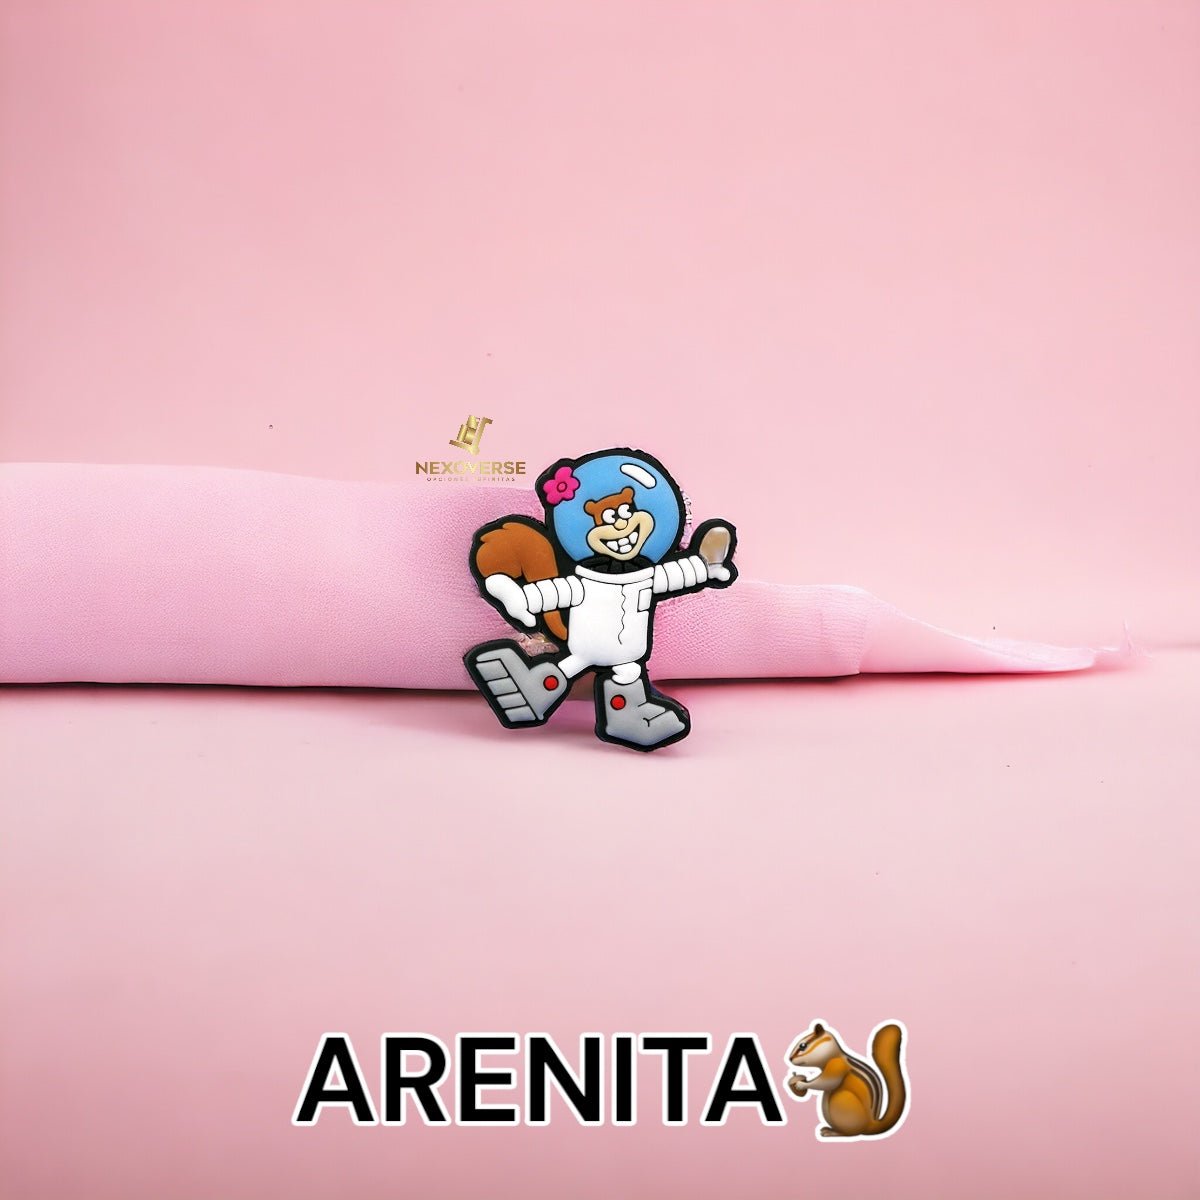 ARENITA Pin🐿️ - NexoVerse